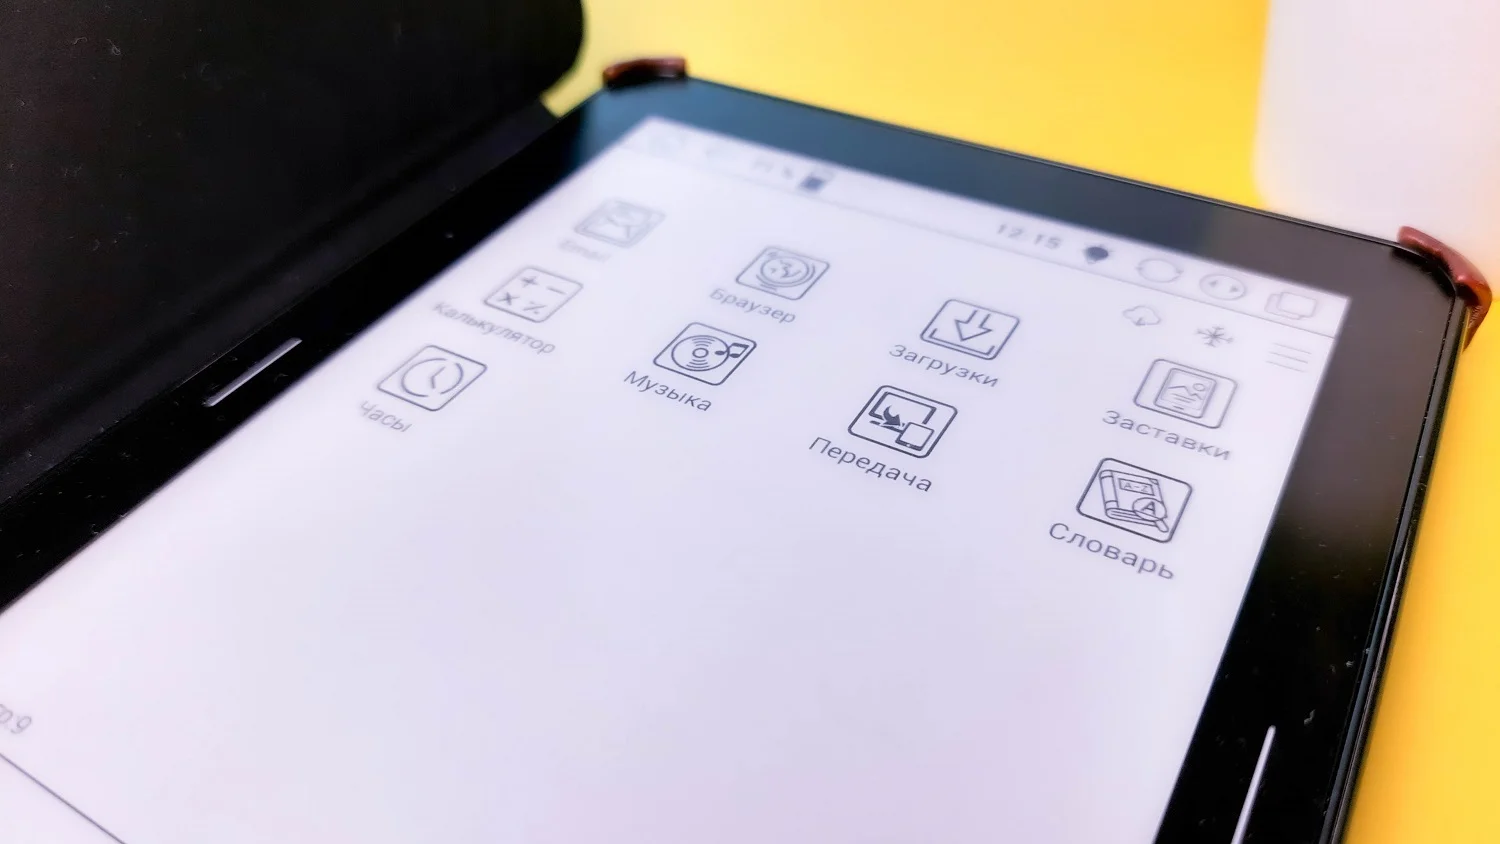 Обзор Onyx Boox Viking: может ли современная электронная книга заменить смартфон